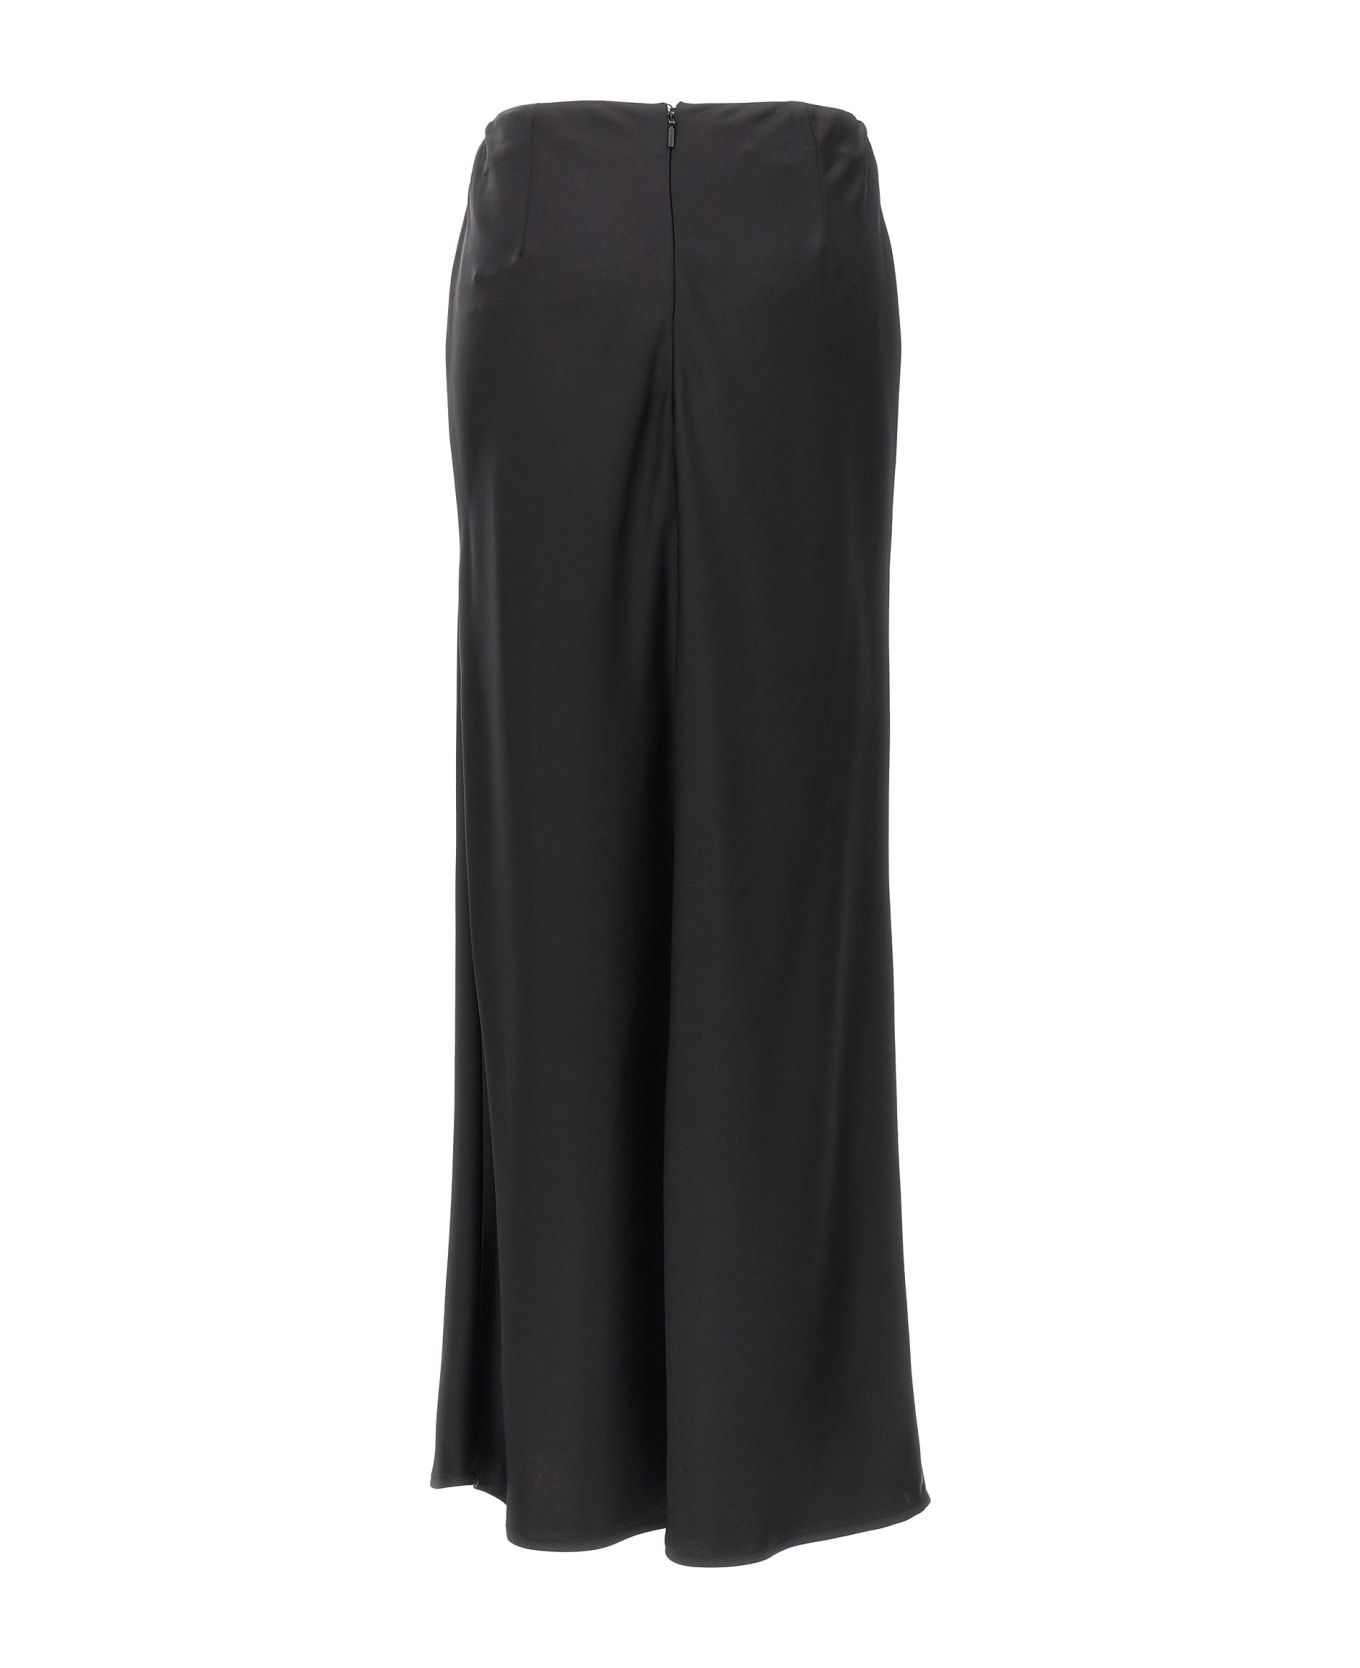 Pinko Long Skirt With Draped Detail In Satin - Black スカート